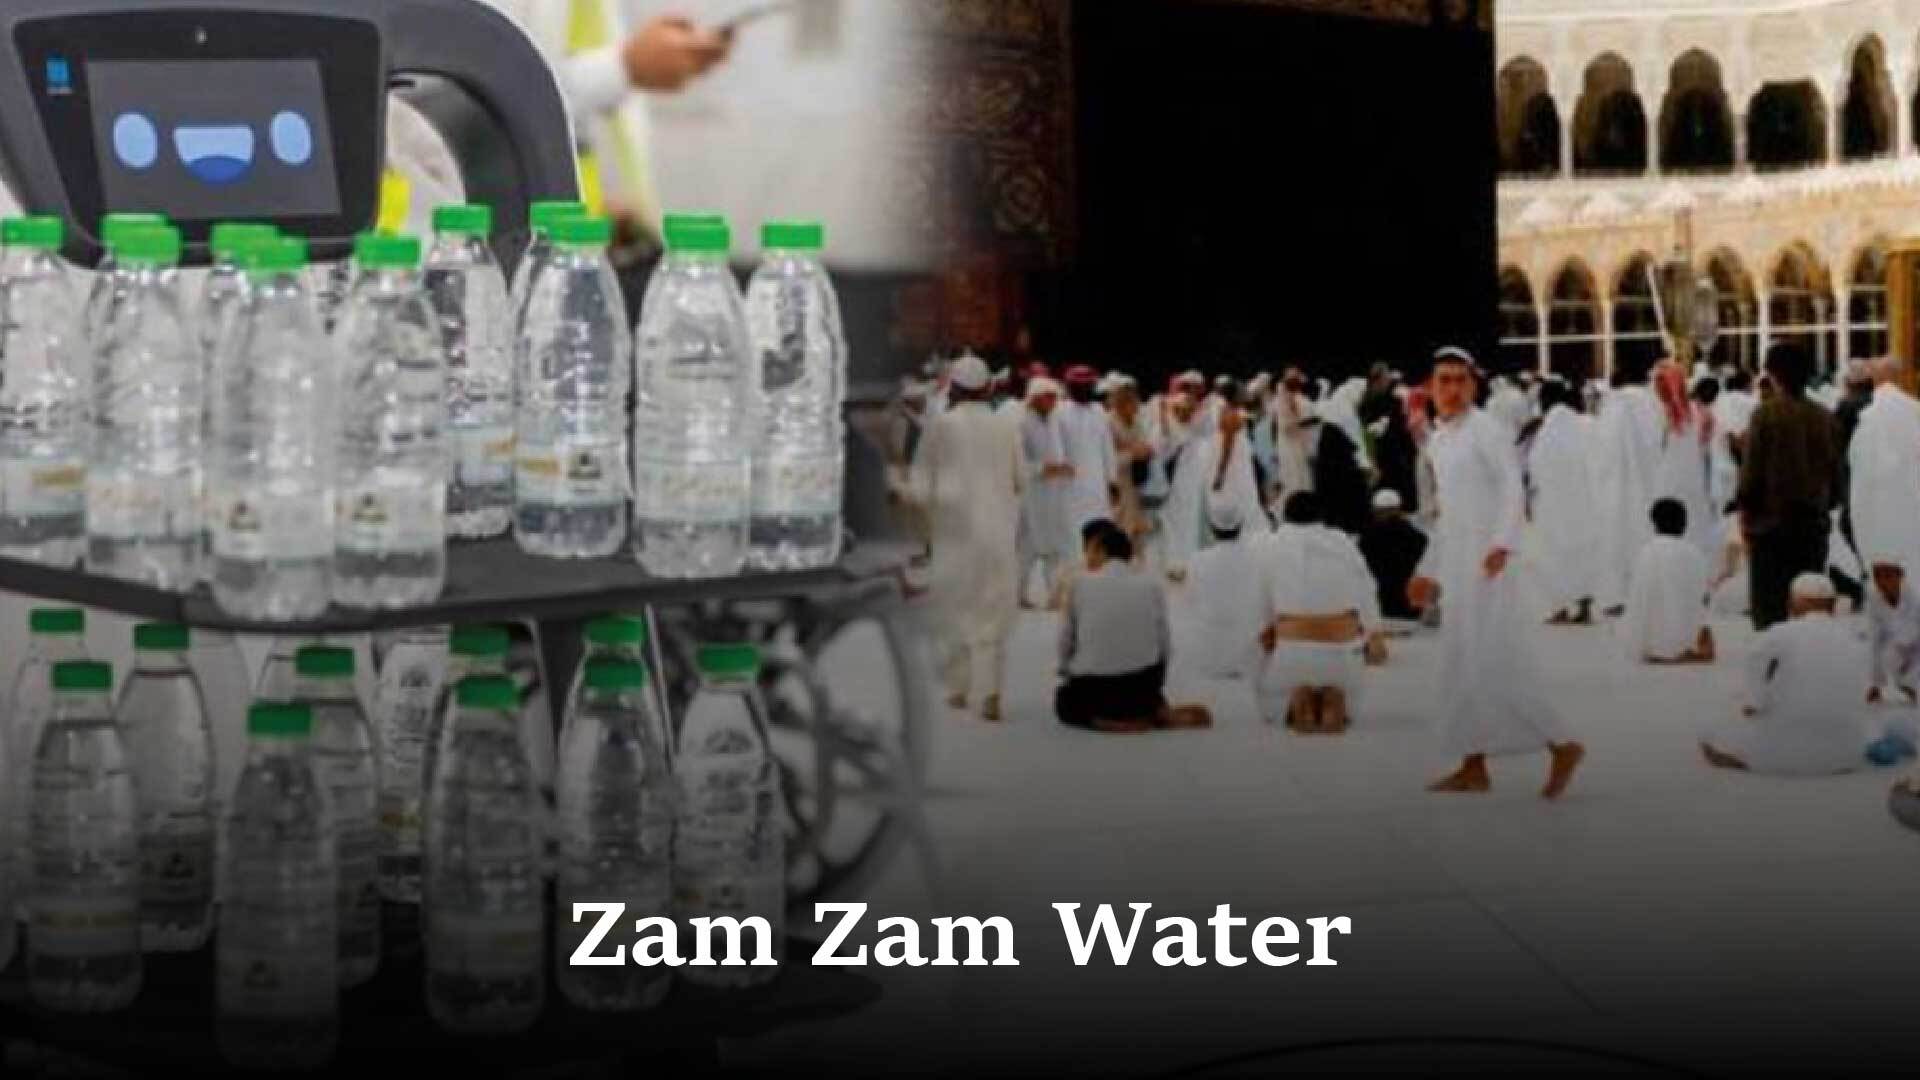 Benefits of Zam Zam Water